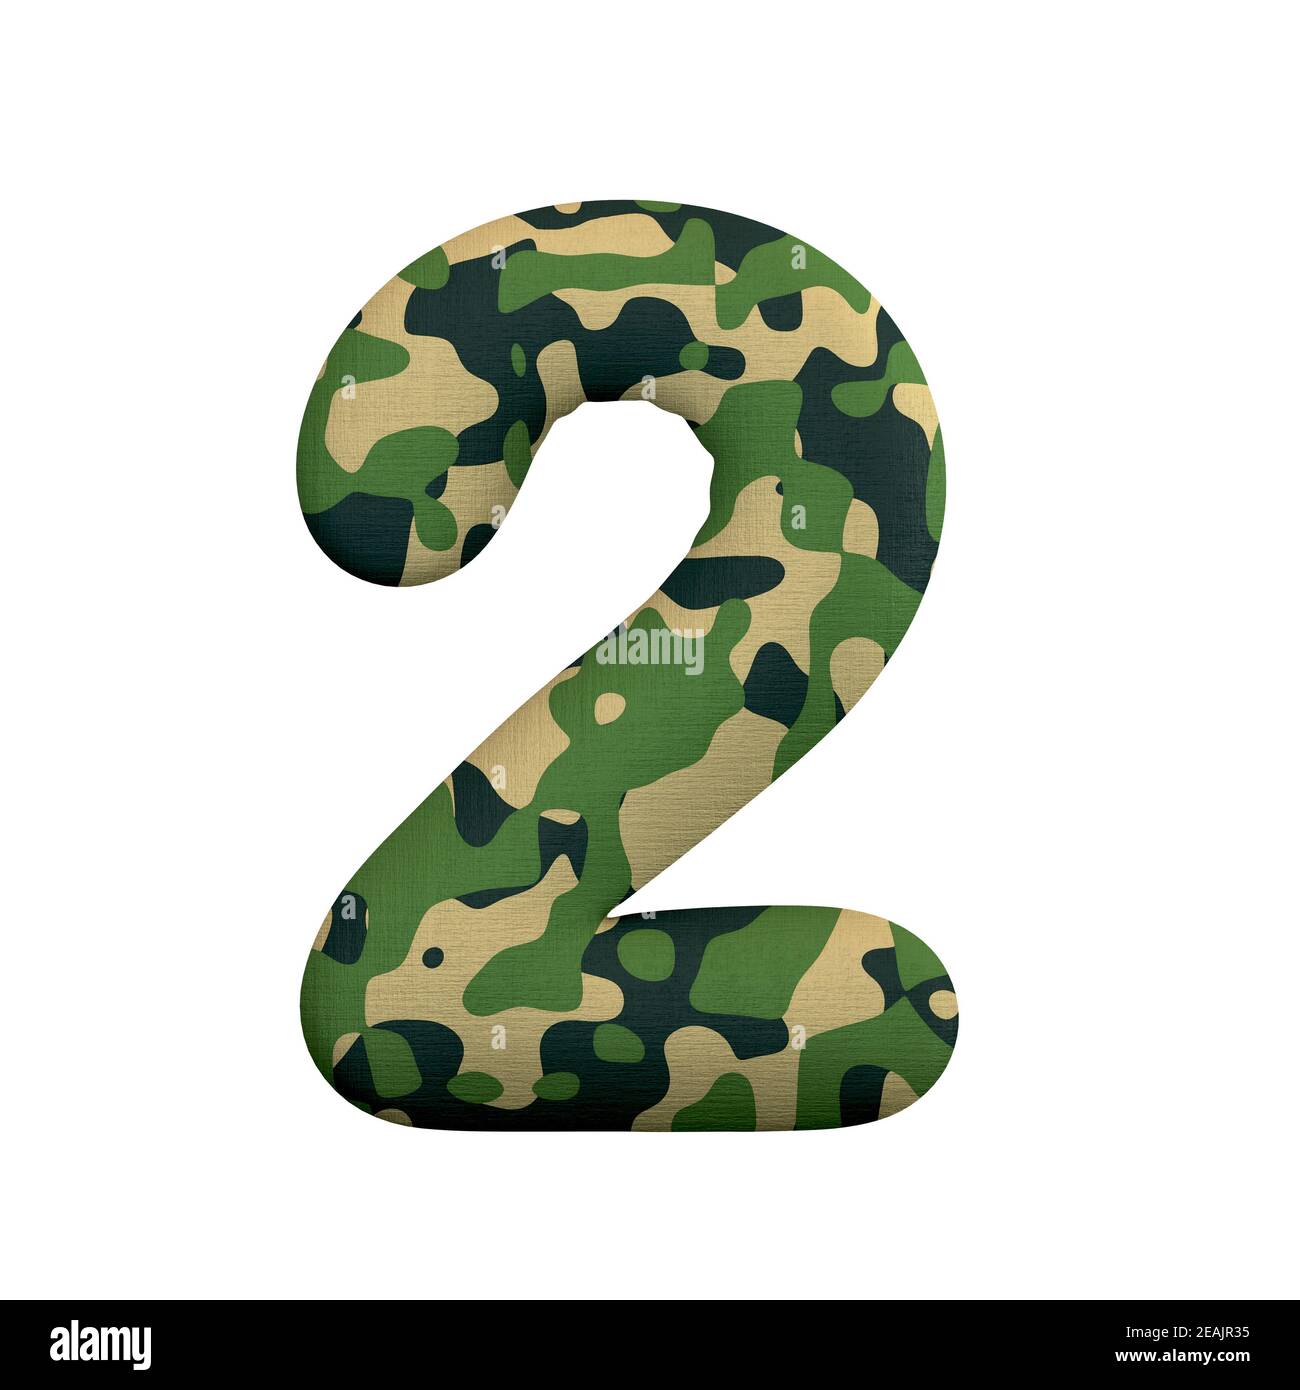 Armée numéro 2 - 3d Camo digit - convient pour l'armée, la guerre ou survalisme sujets liés Banque D'Images